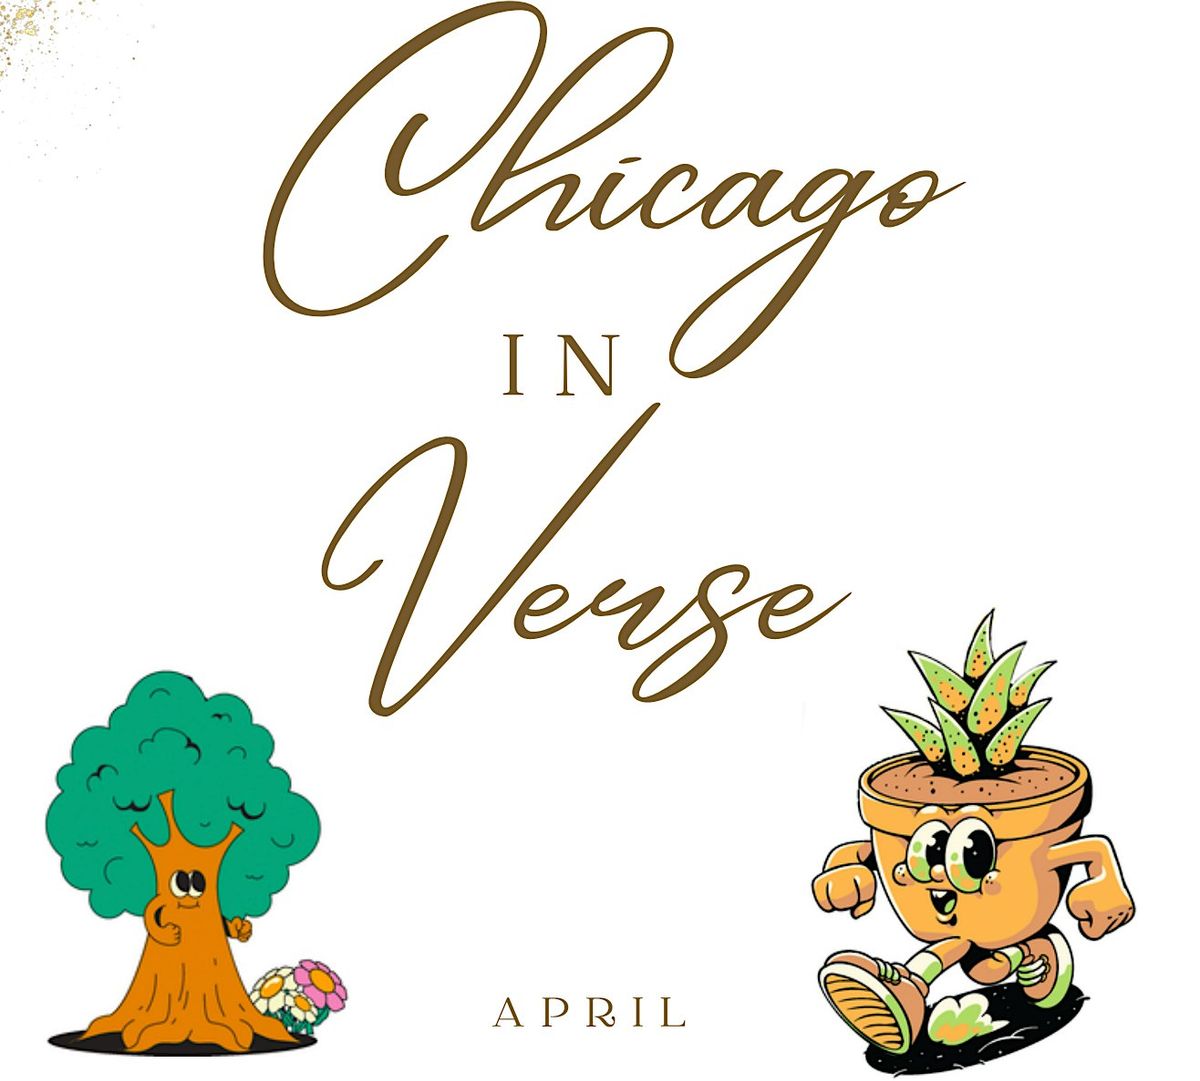 Chicago In Verse